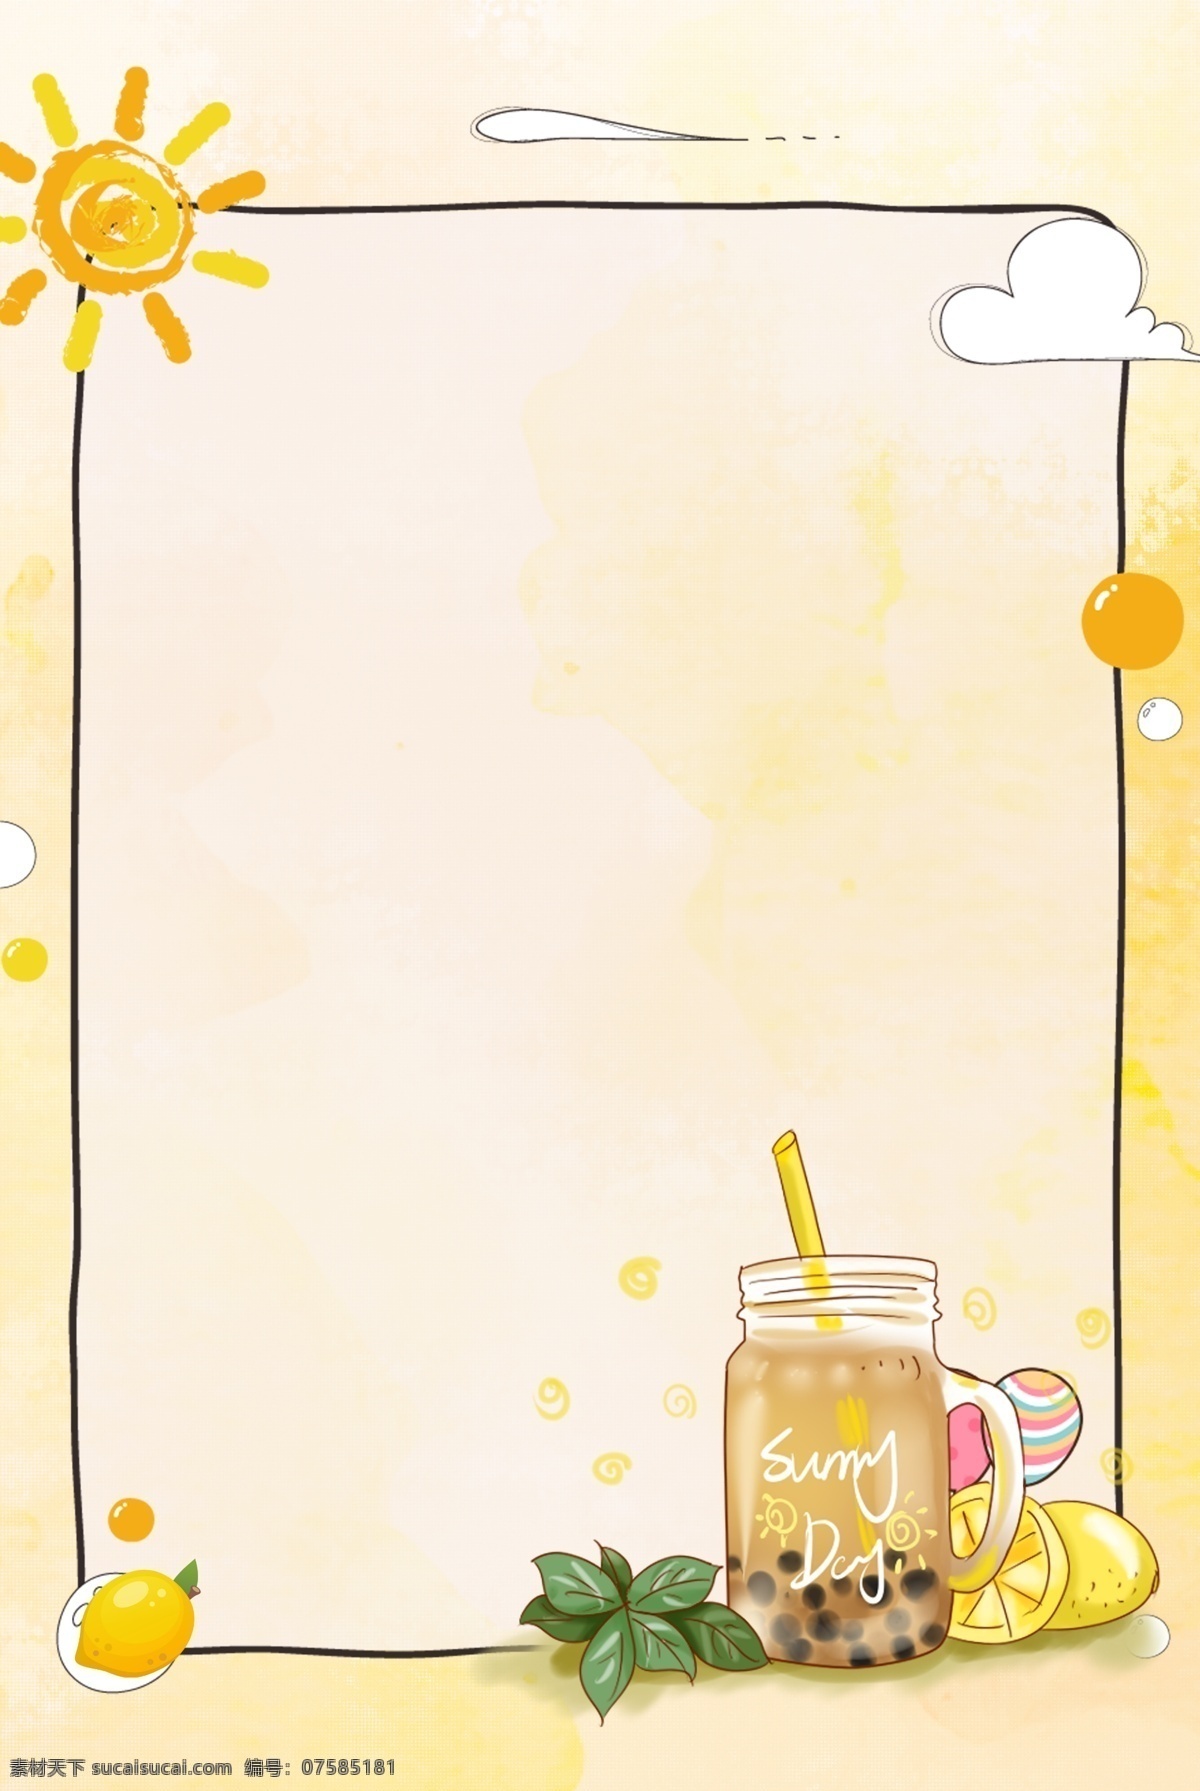 夏季 冰 爽 果汁 背景 冰爽 背景图片 柠檬 水果 饮料 饮品 边框